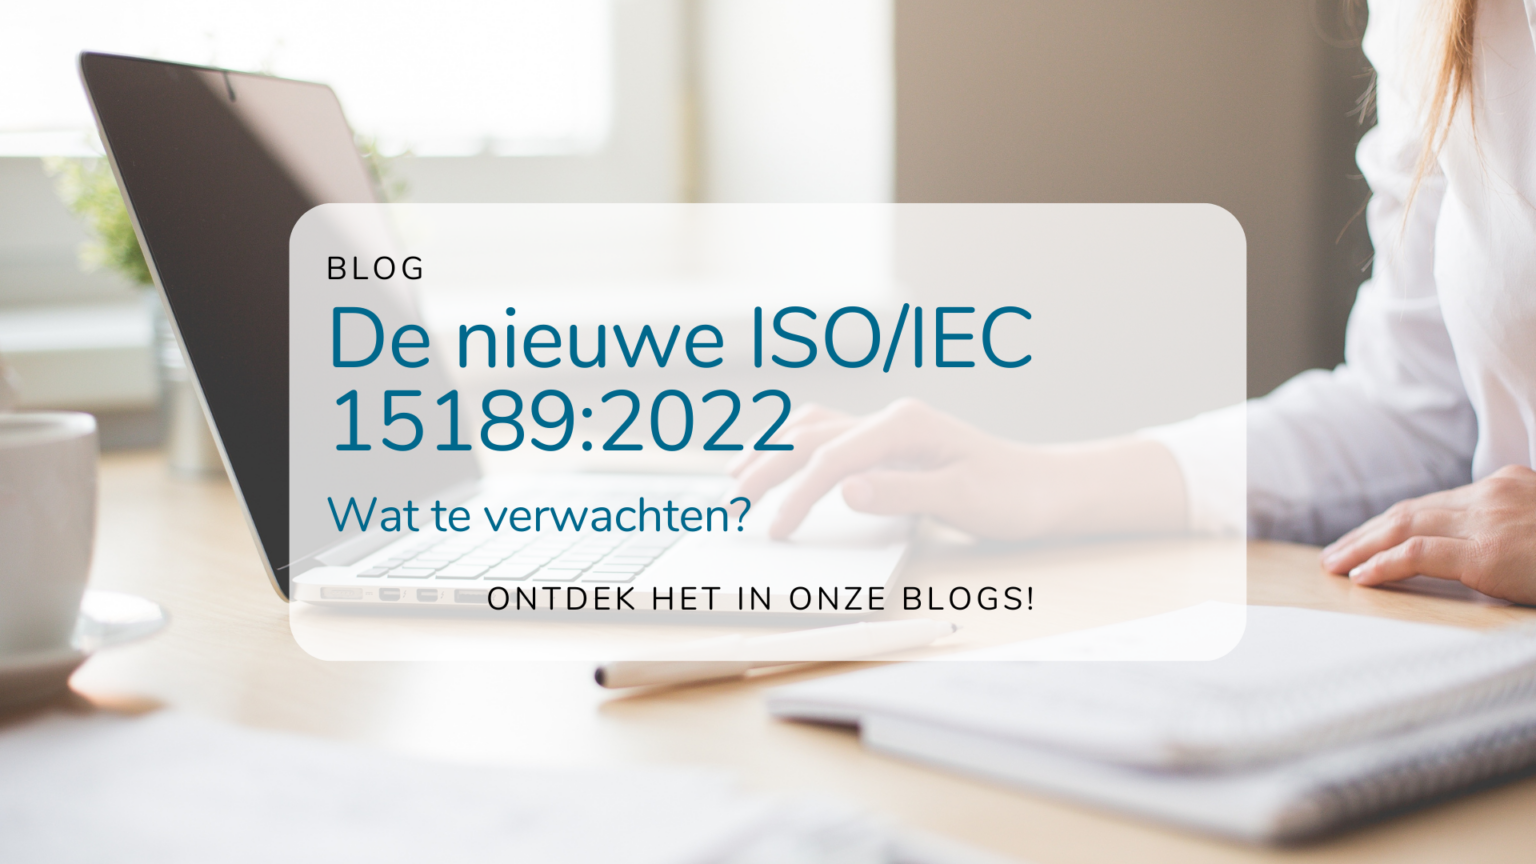 De nieuwe ISO 15189:2022 norm